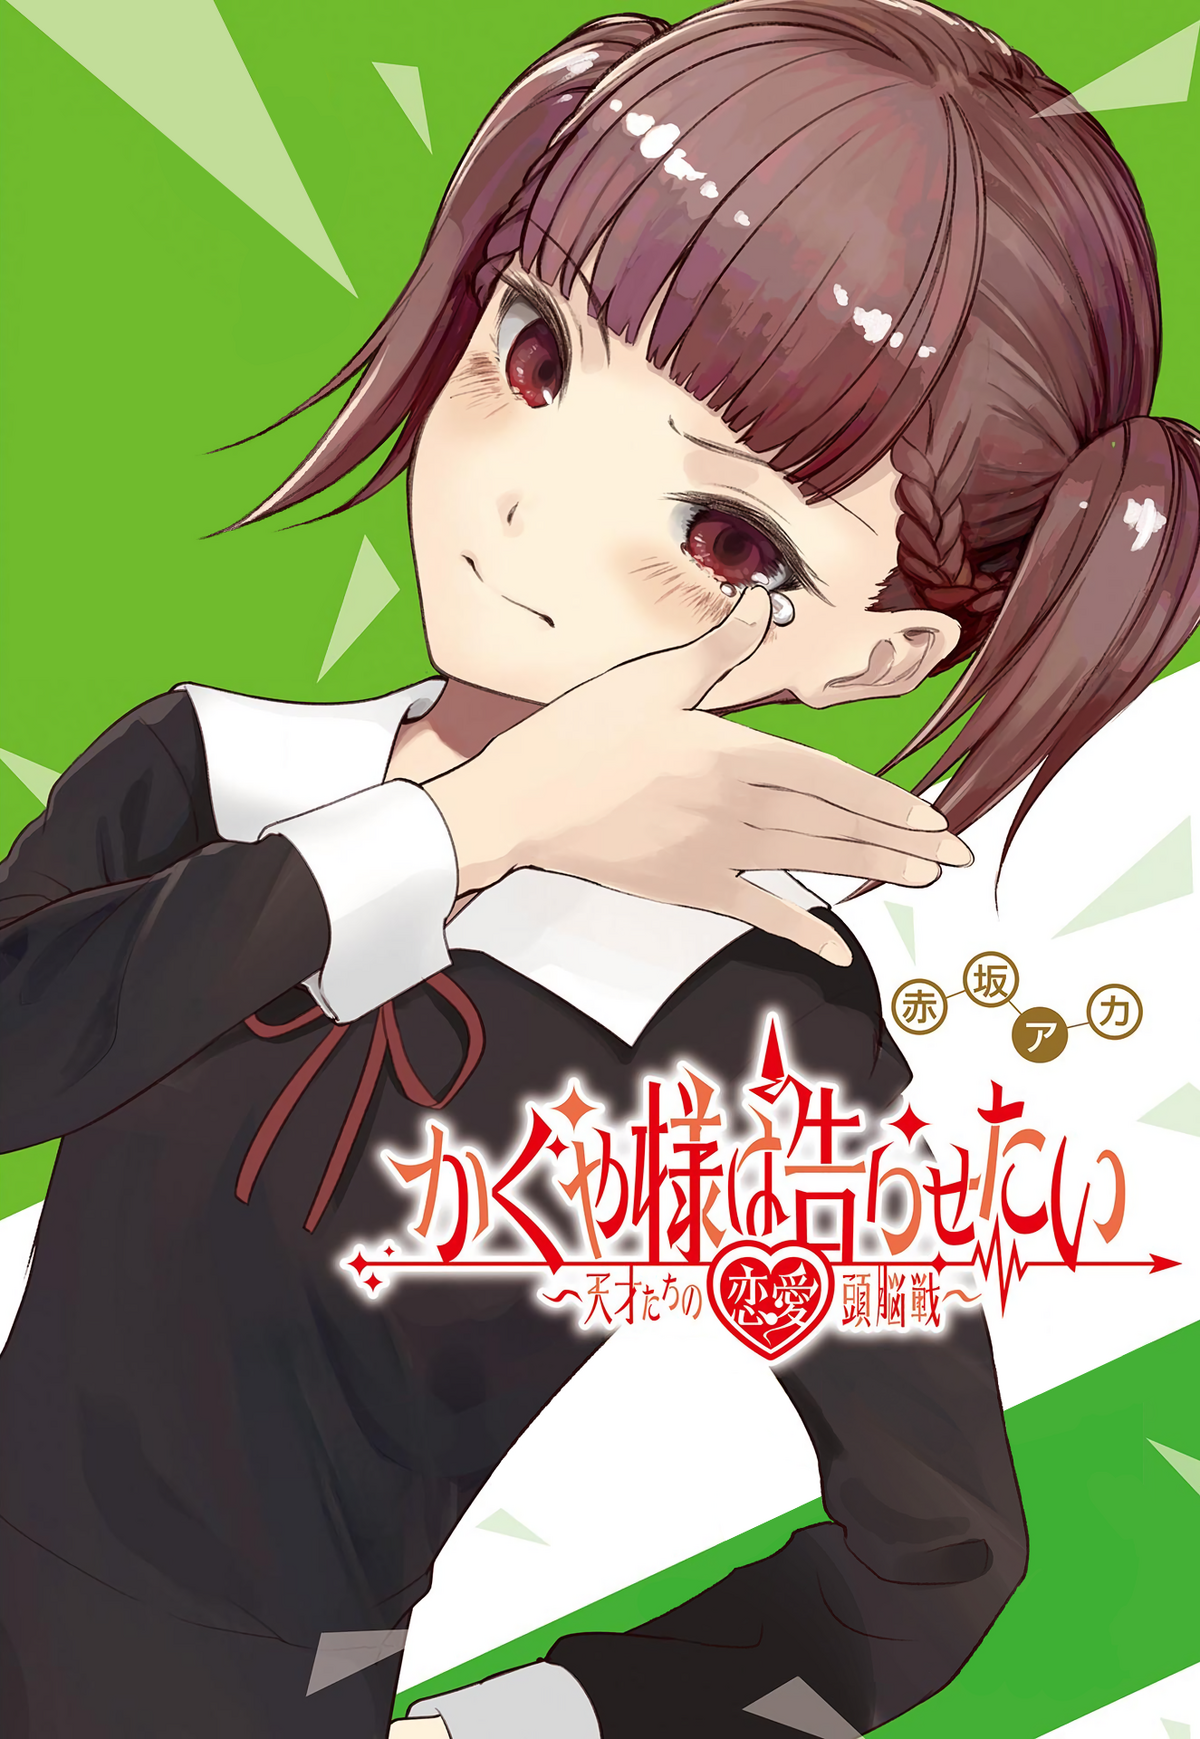 Manga Mogura RE on X: Kaguya-sama Anime Season 4 upcoming according to a  reliable weibo user  / X